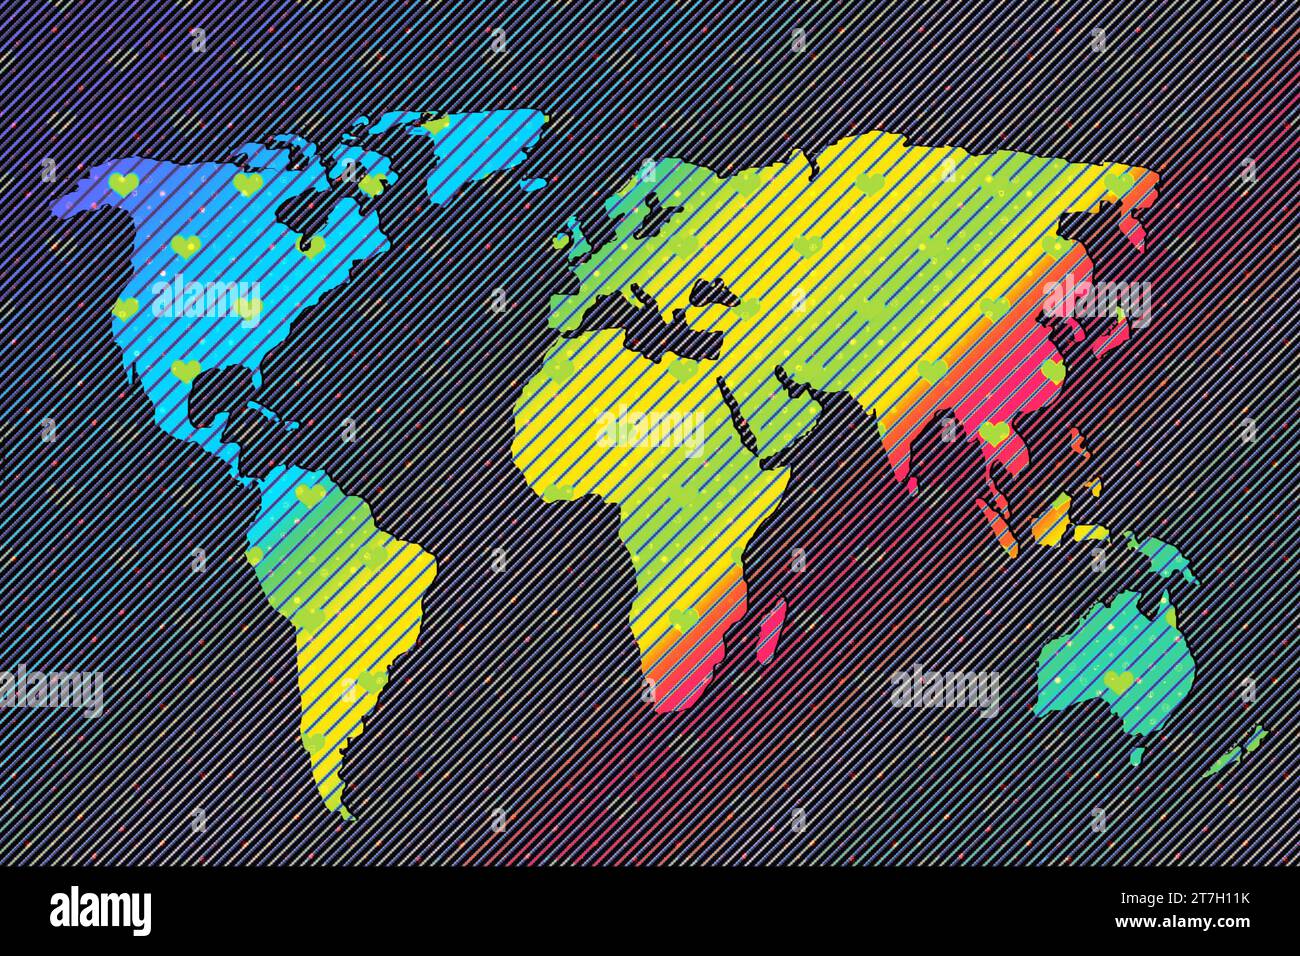 Conception de carte du monde avec motif de coeur. Terre avec continents. Carte de l'europe et de l'amérique, de l'Asie et de l'Australie. Modèle plat de carte de la Terre pour le site Web Banque D'Images